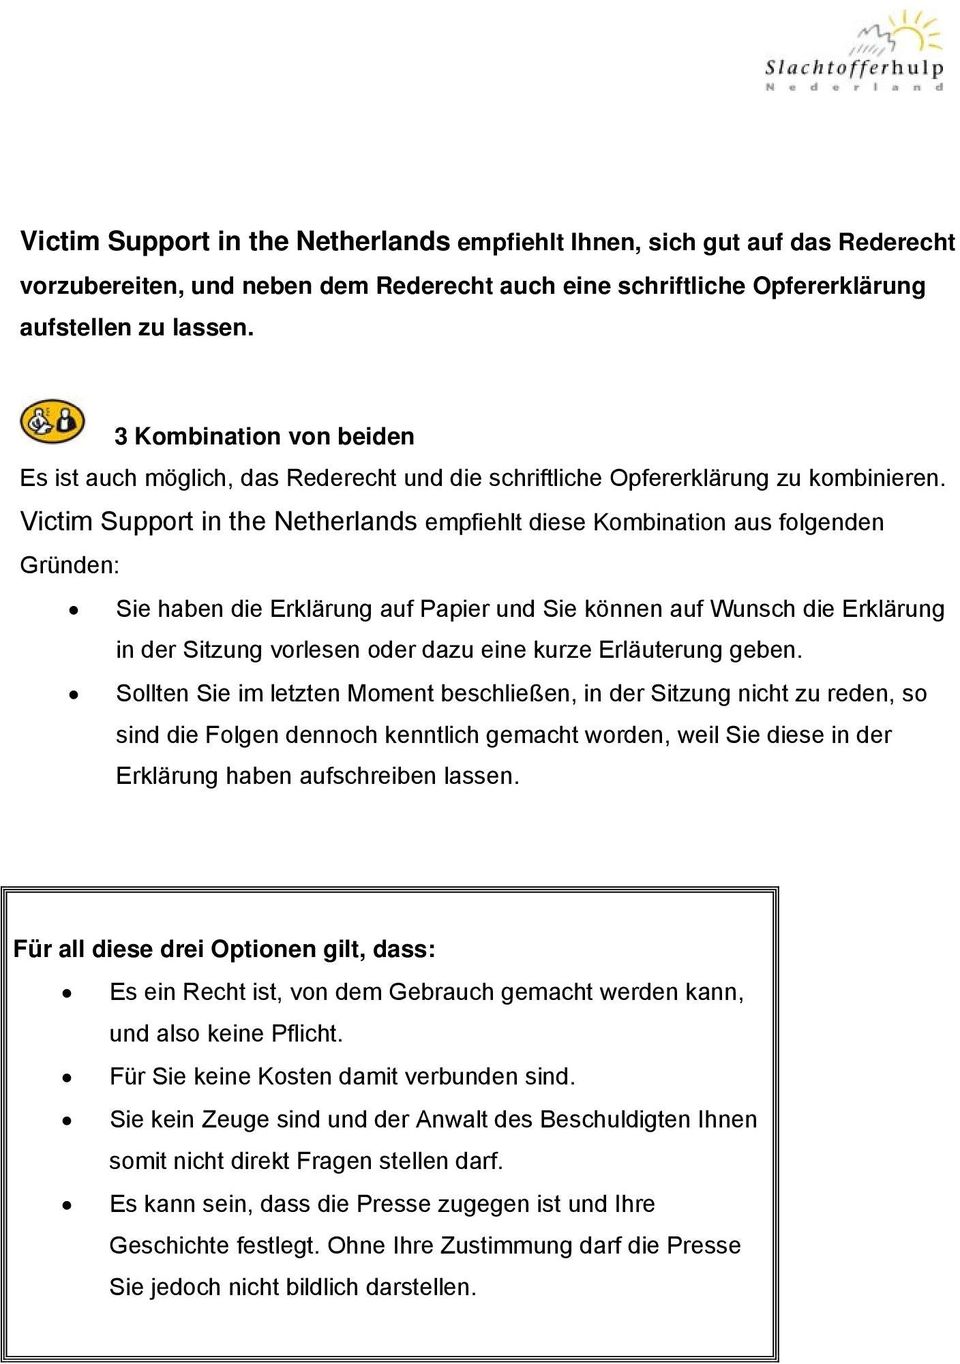 Victim Support in the Netherlands empfiehlt diese Kombination aus folgenden Gründen: Sie haben die Erklärung auf Papier und Sie können auf Wunsch die Erklärung in der Sitzung vorlesen oder dazu eine